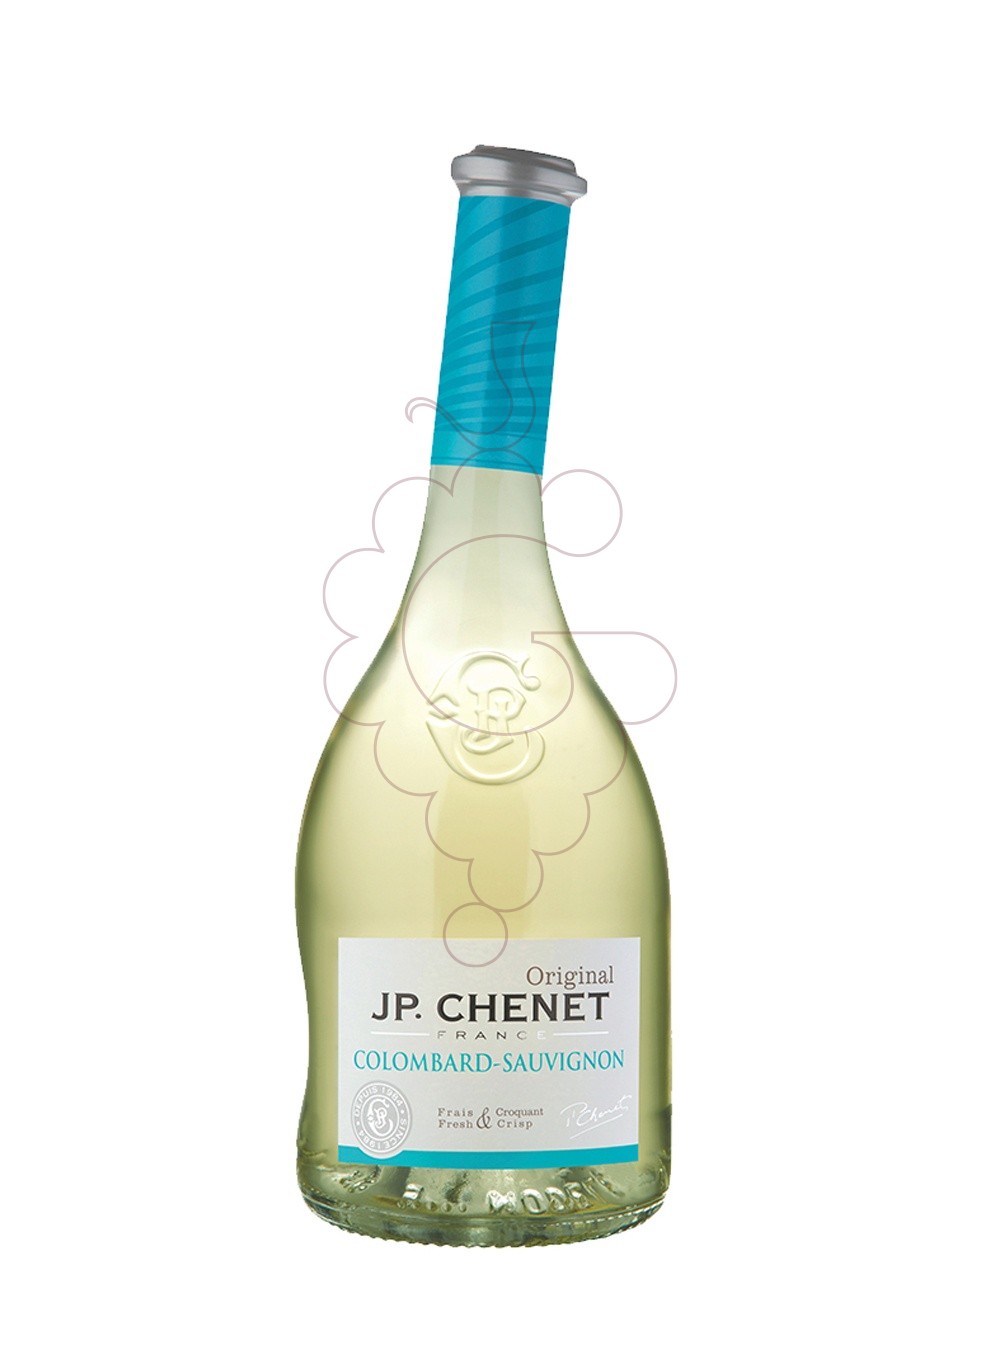 Foto JP Chenet Original Colombard-Sauvignon Blanc vino blanco